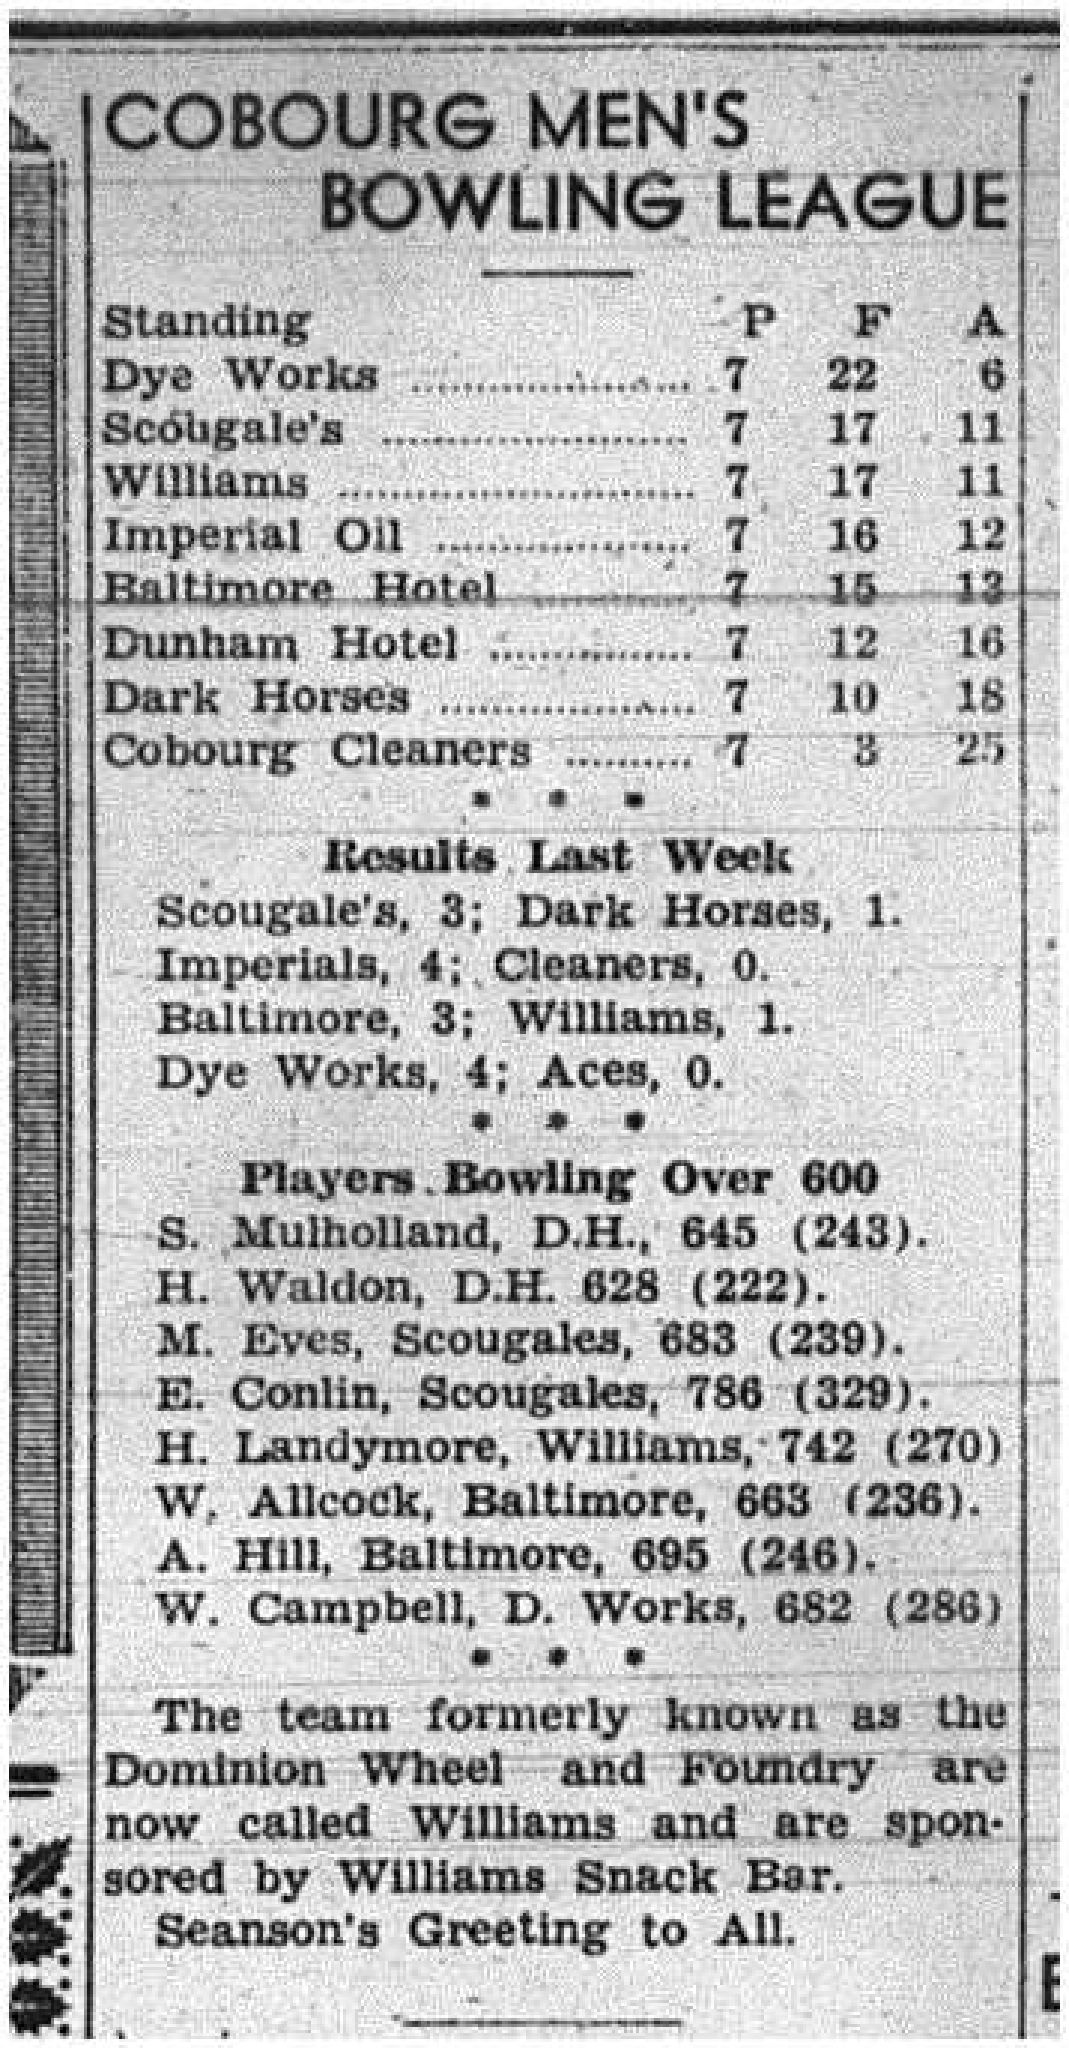 1943-12-23 Bowling - Men